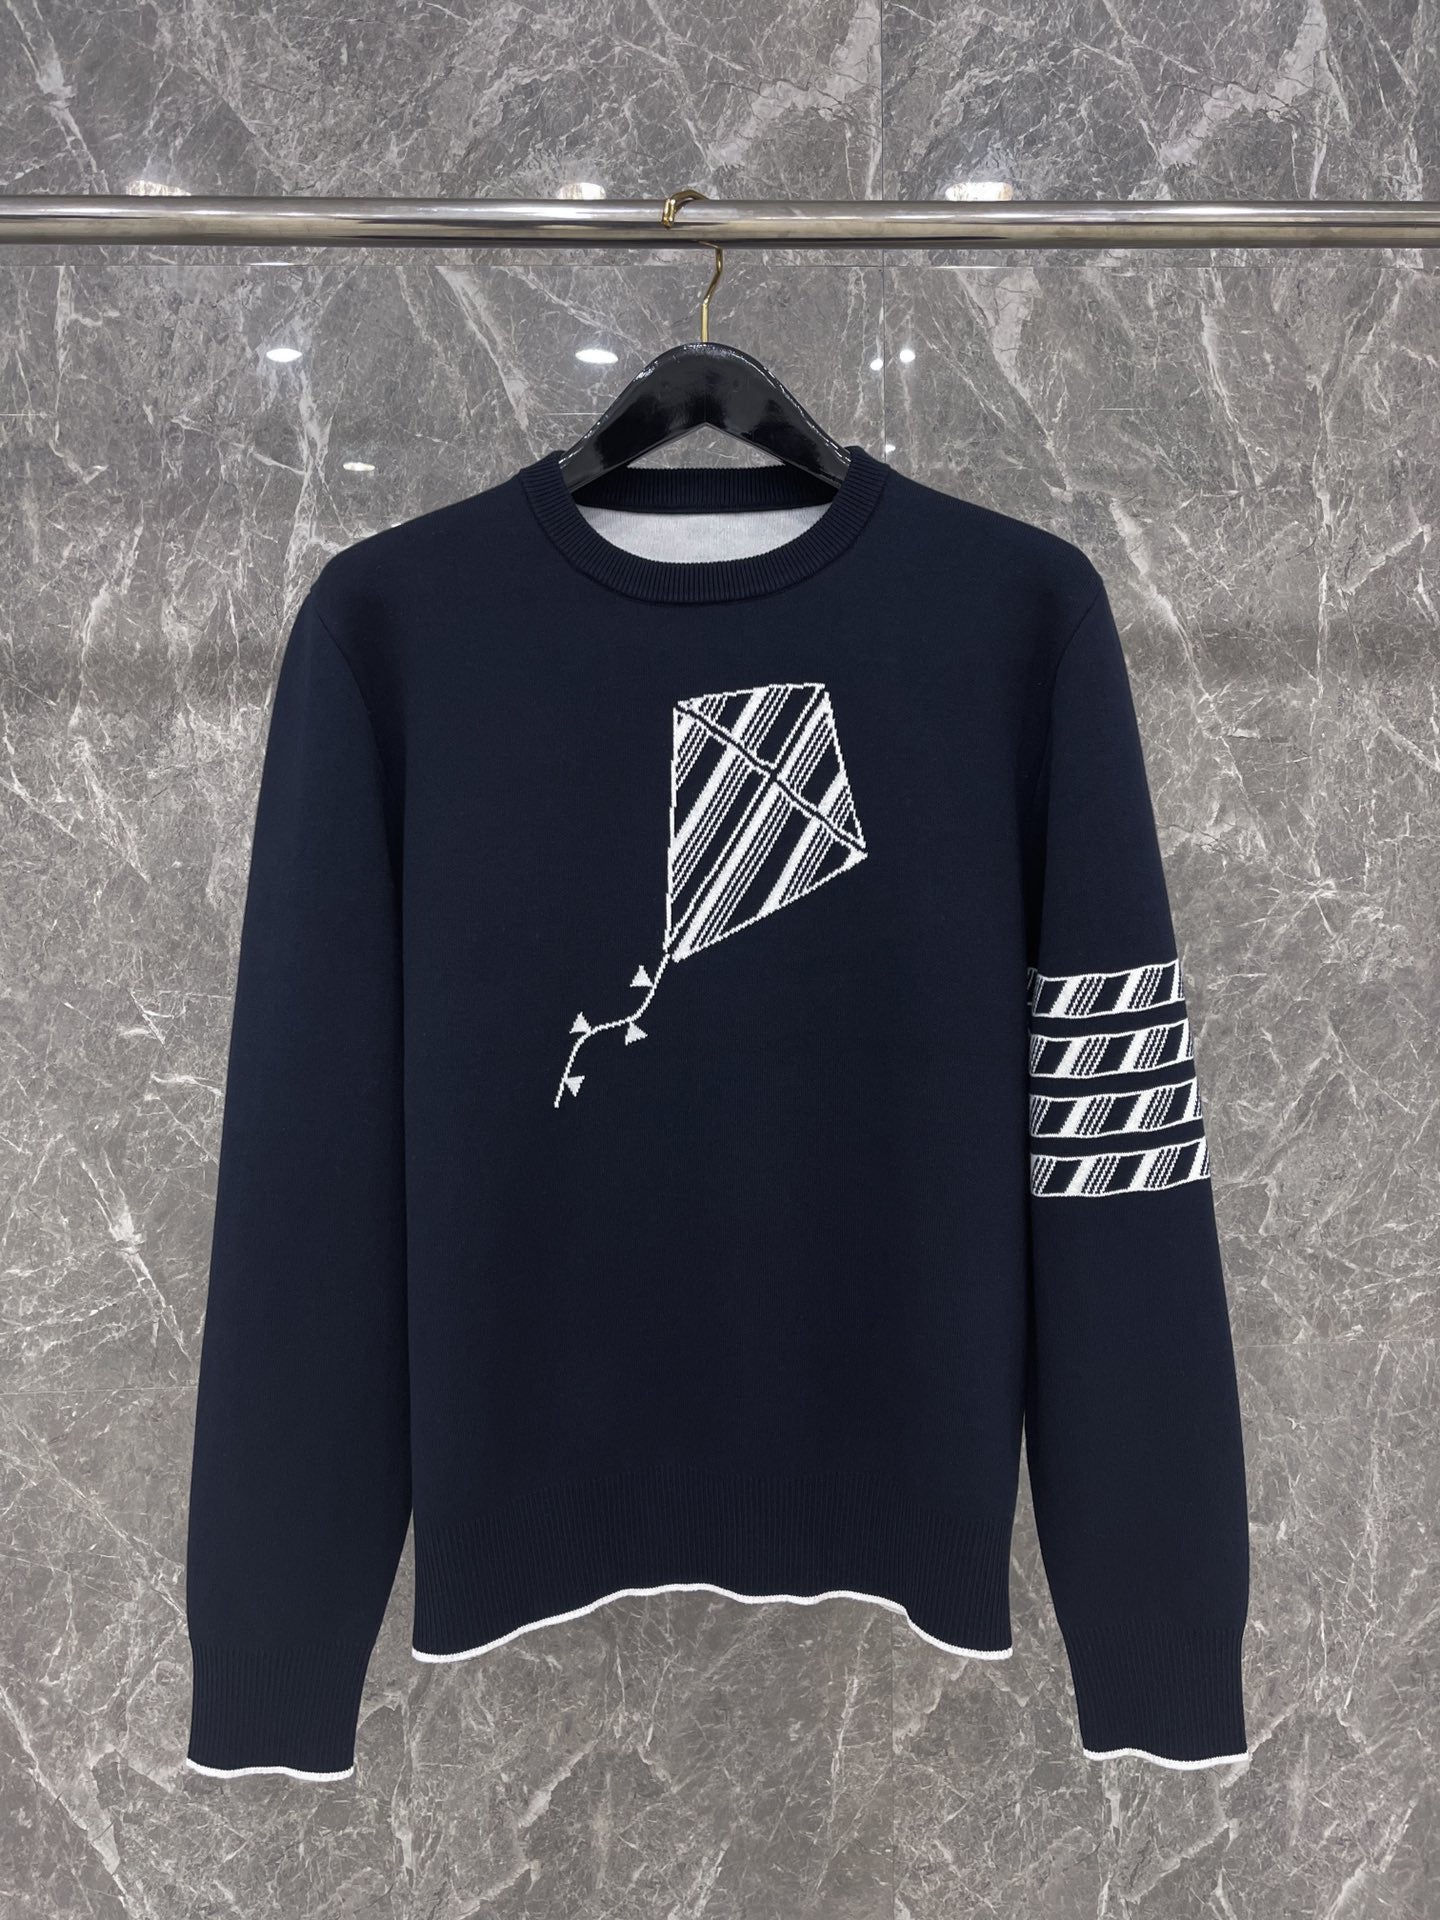 대리석 / 톰브라운 니트 스웨터   2가지색상